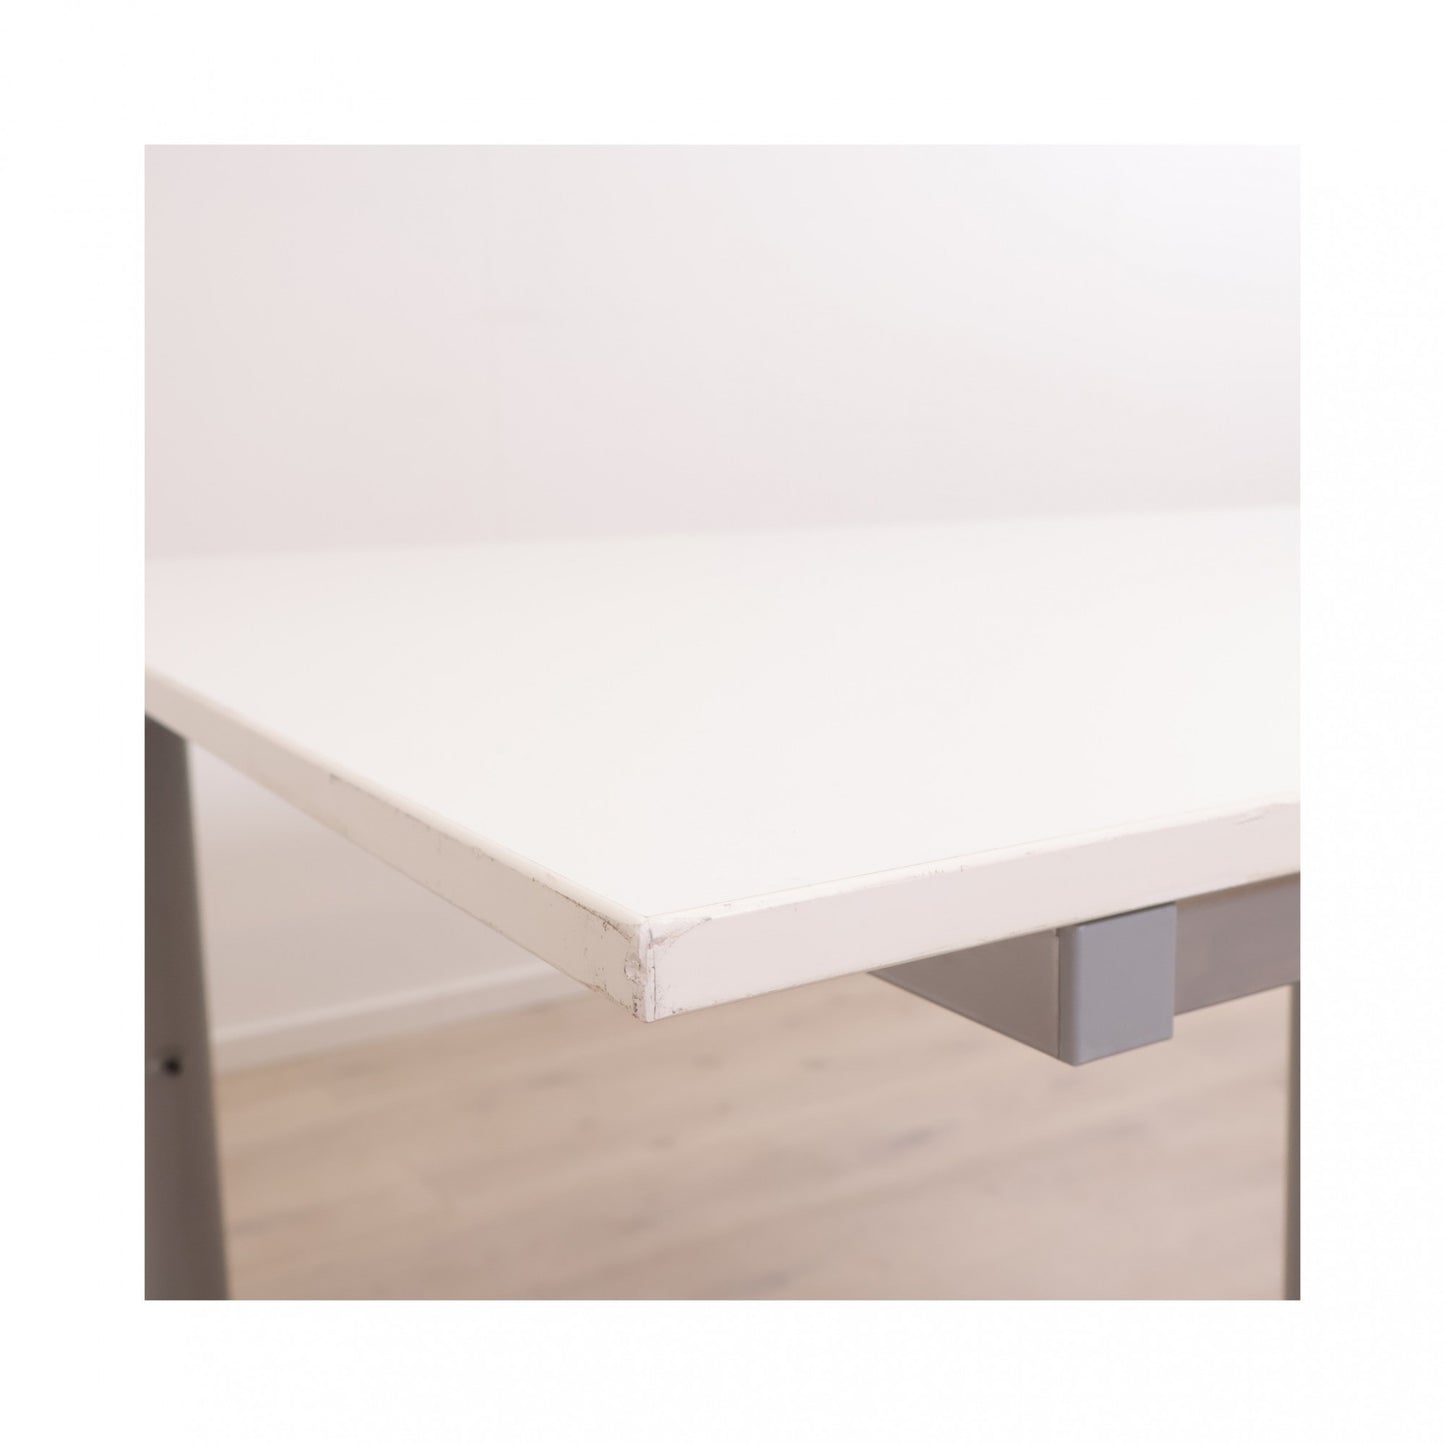 160x120 cm, Galant skrivebord med venstresving